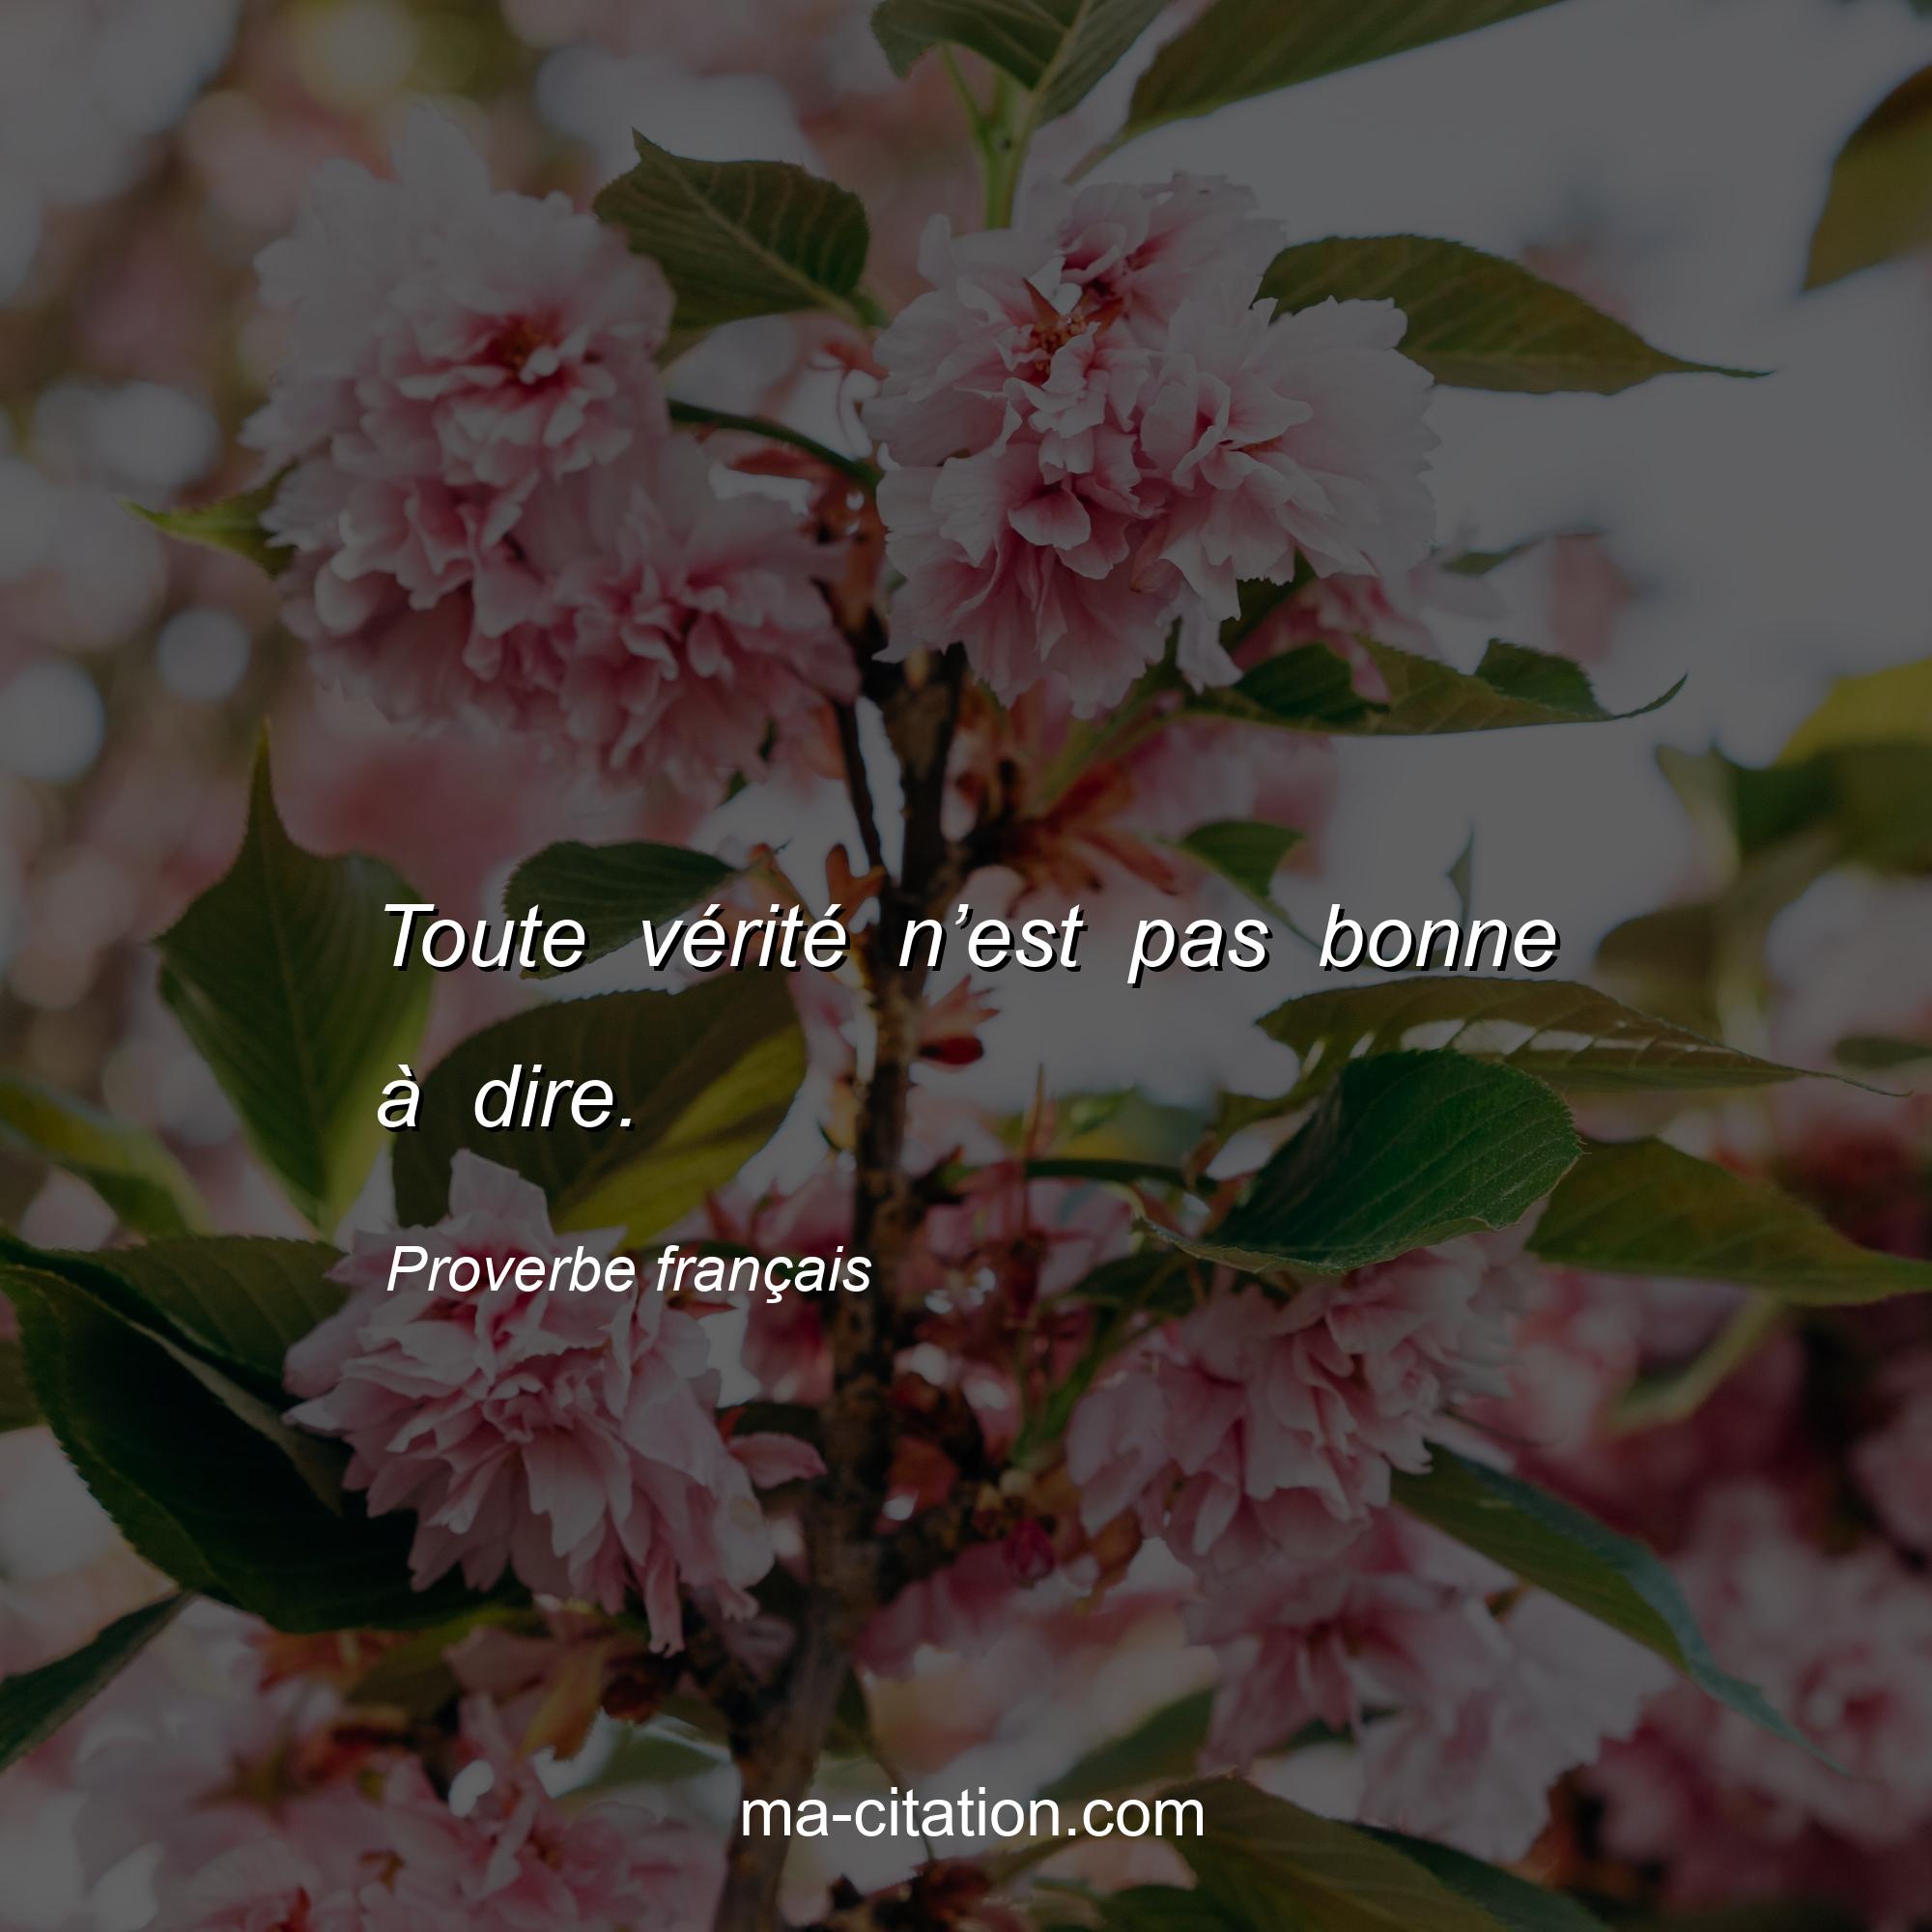 Proverbe français : Toute vérité n’est pas bonne à dire.